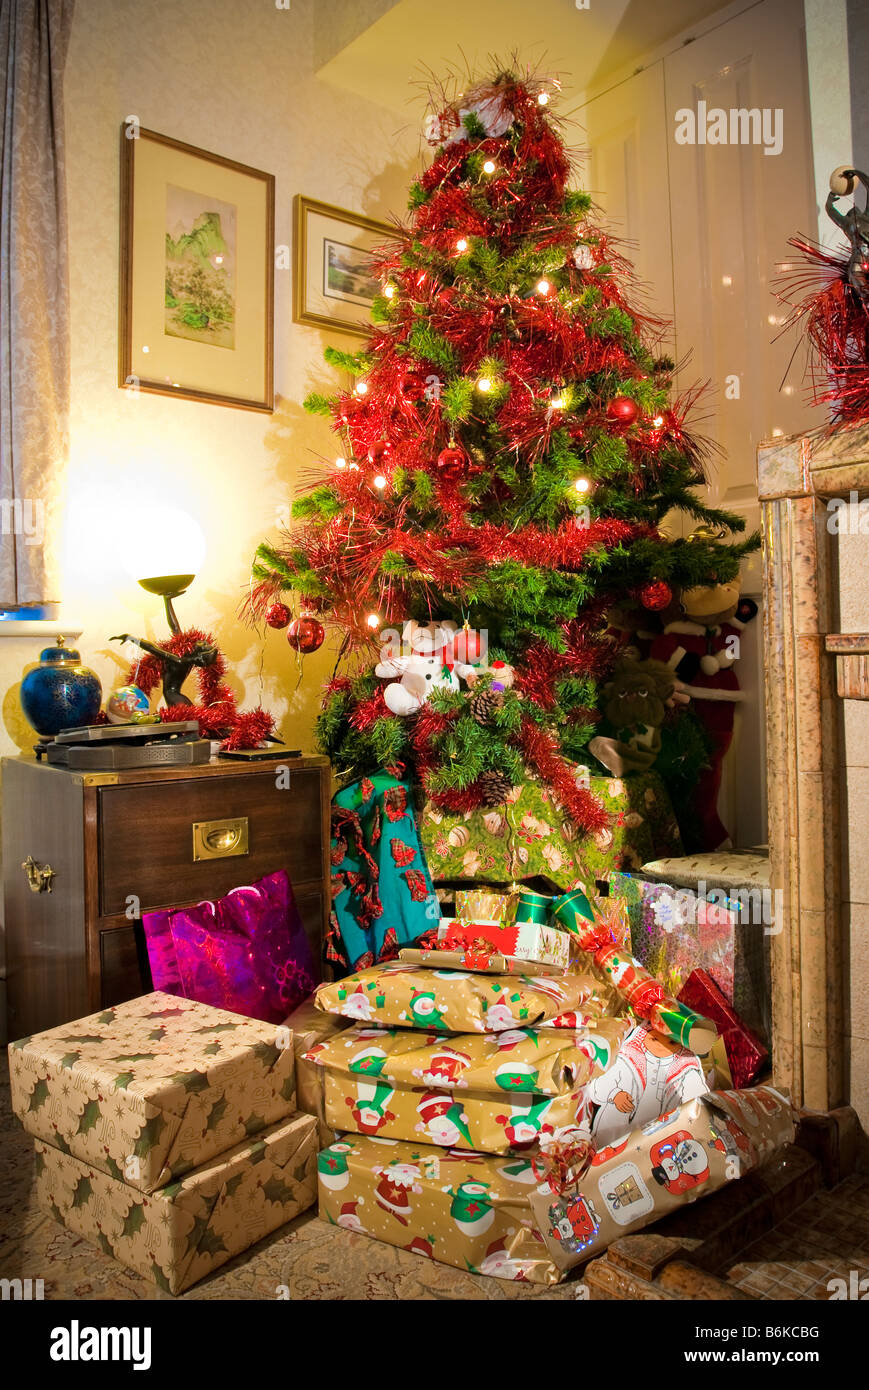 Natale Sotto L Albero.I Regali Di Natale Sotto L Albero Foto Stock Alamy